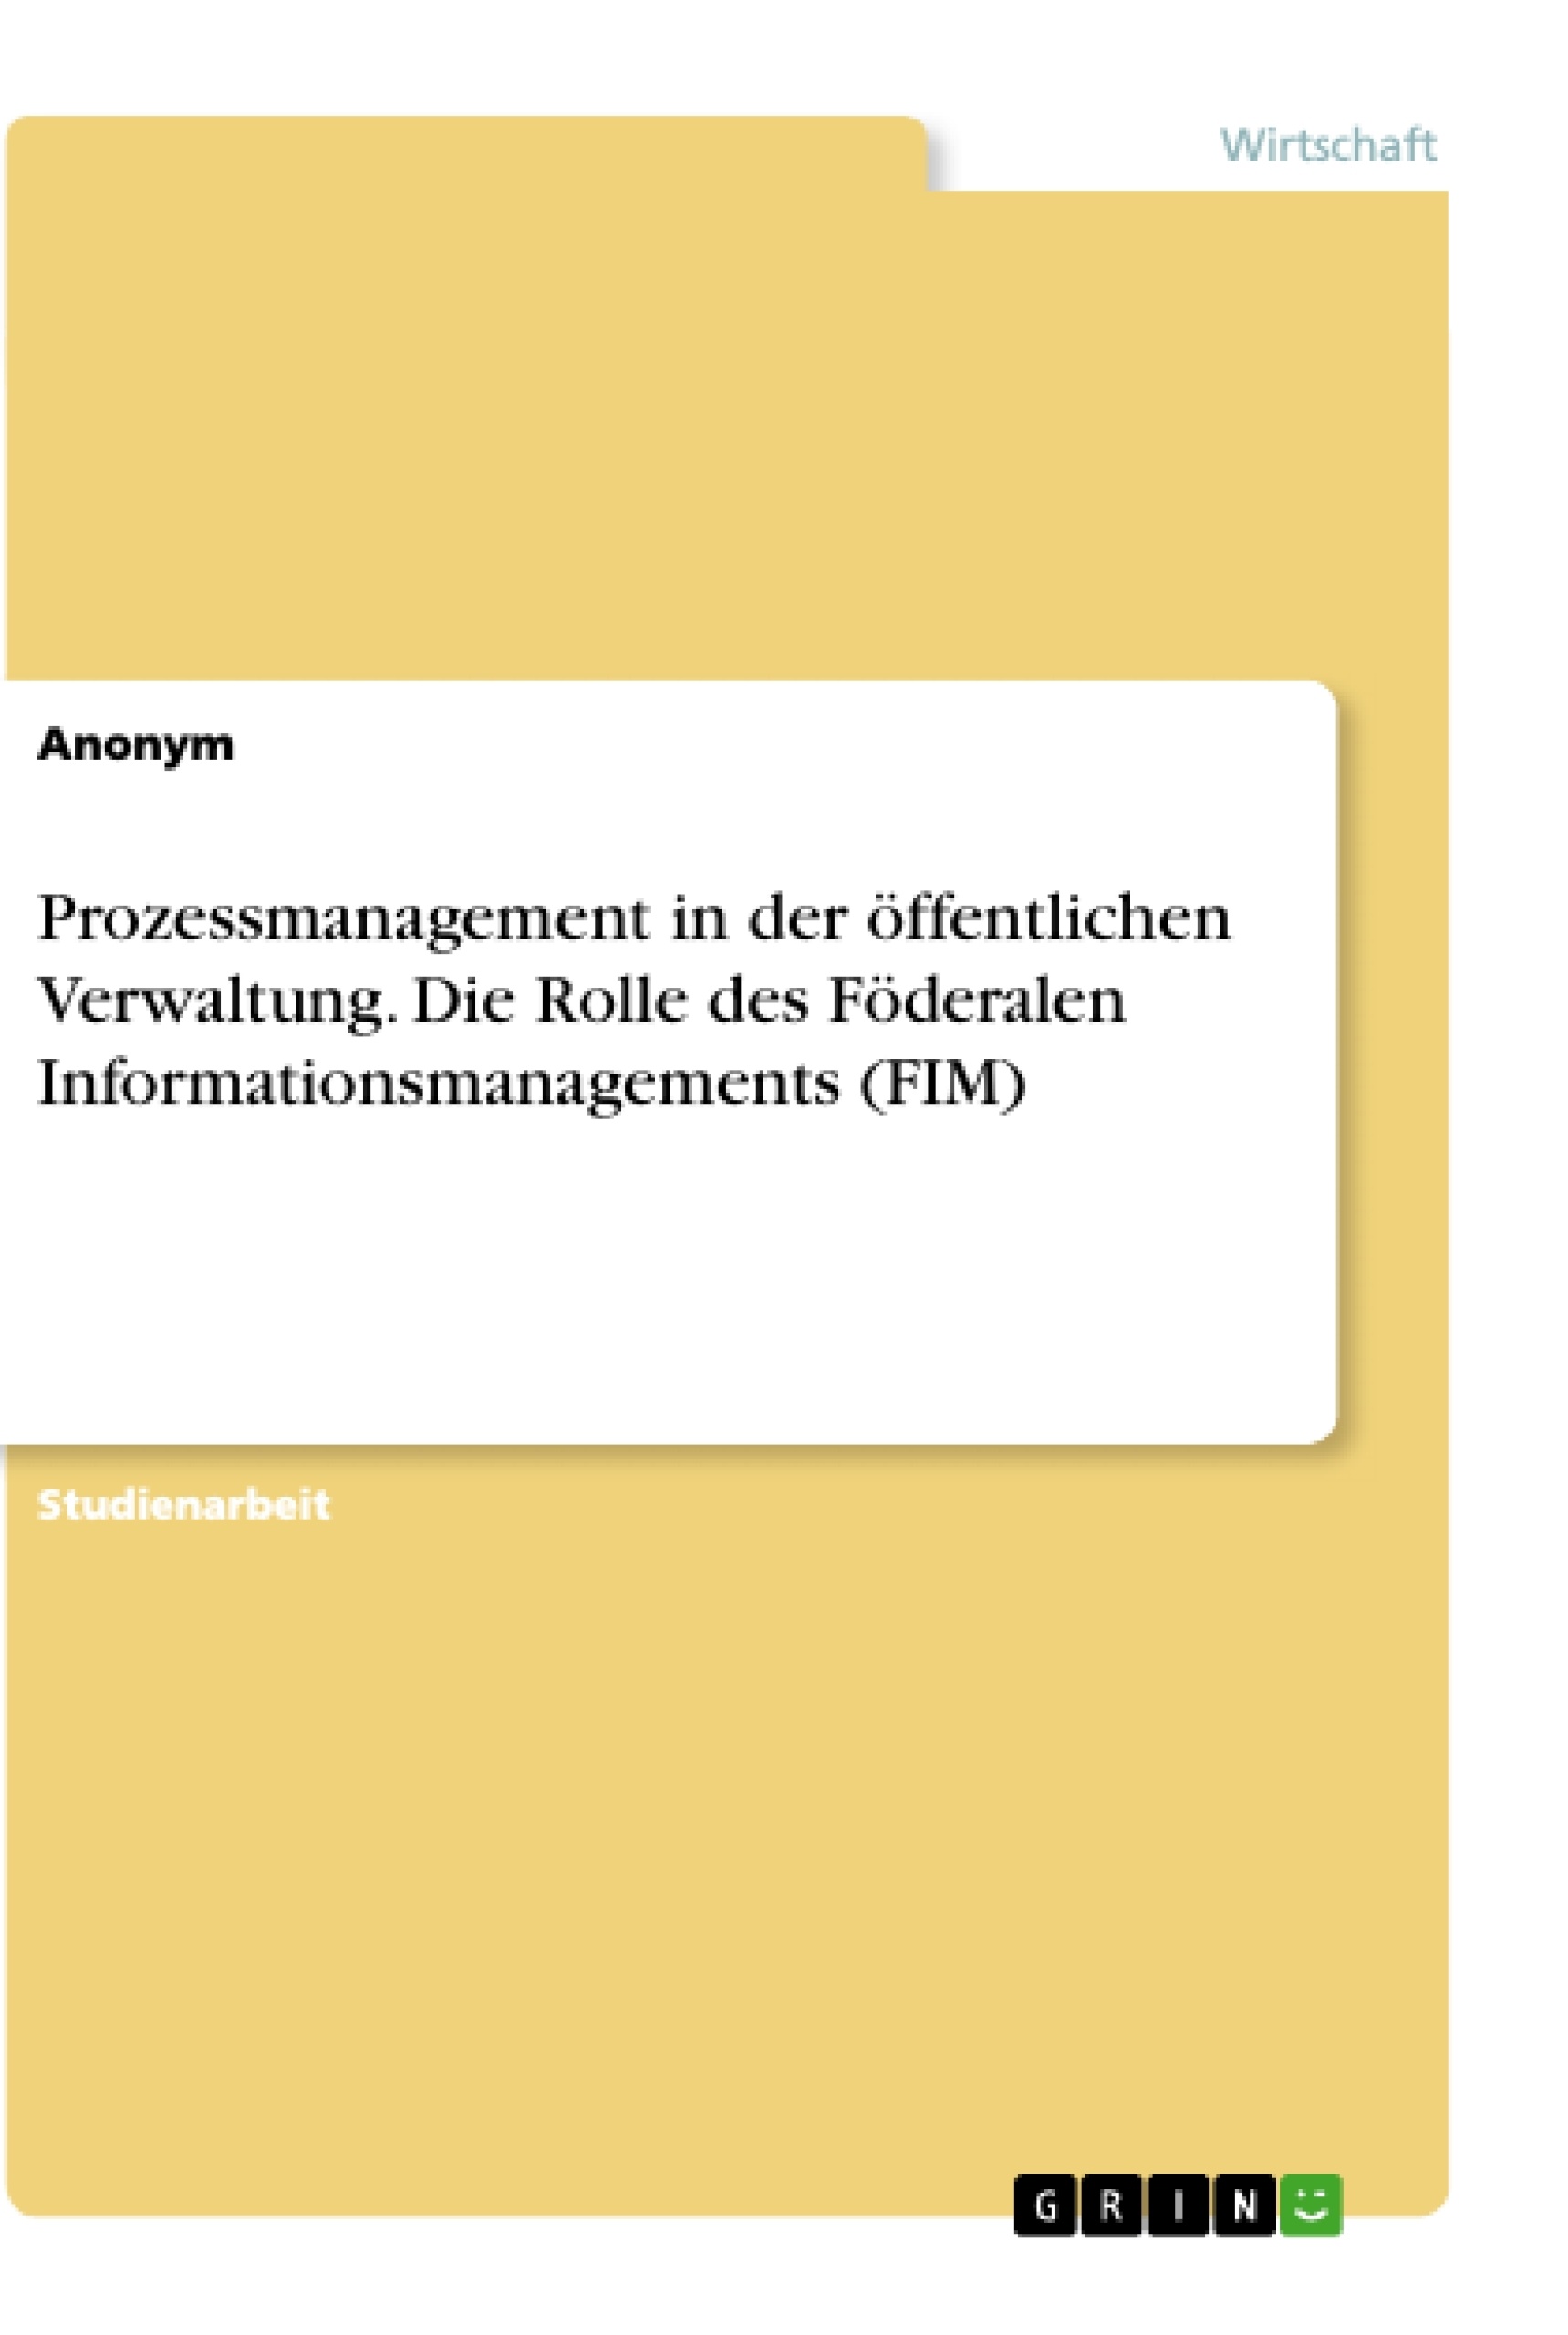 Title: Prozessmanagement in der öffentlichen Verwaltung. Die Rolle des Föderalen Informationsmanagements (FIM)